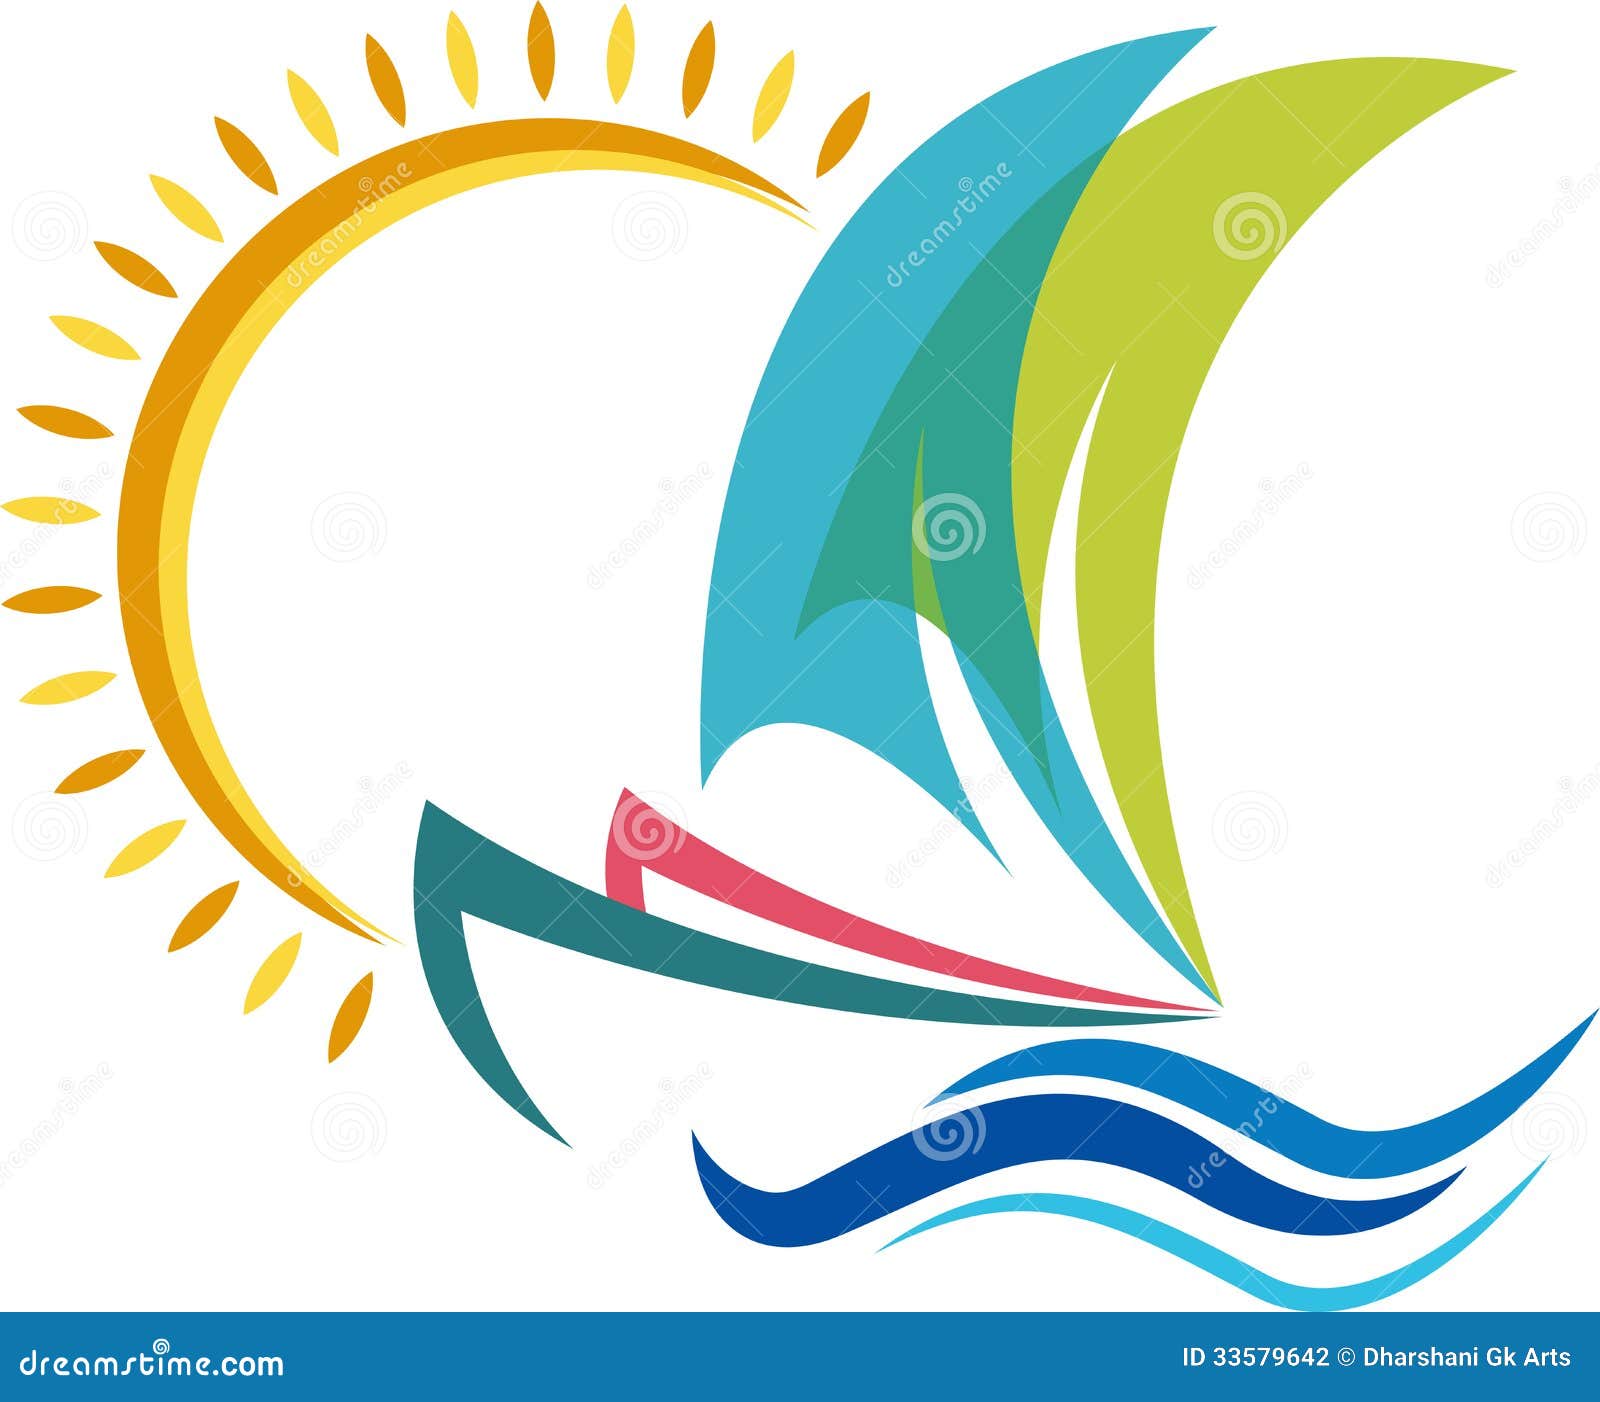 Boat Logo Stock Photography - Image: 33579642